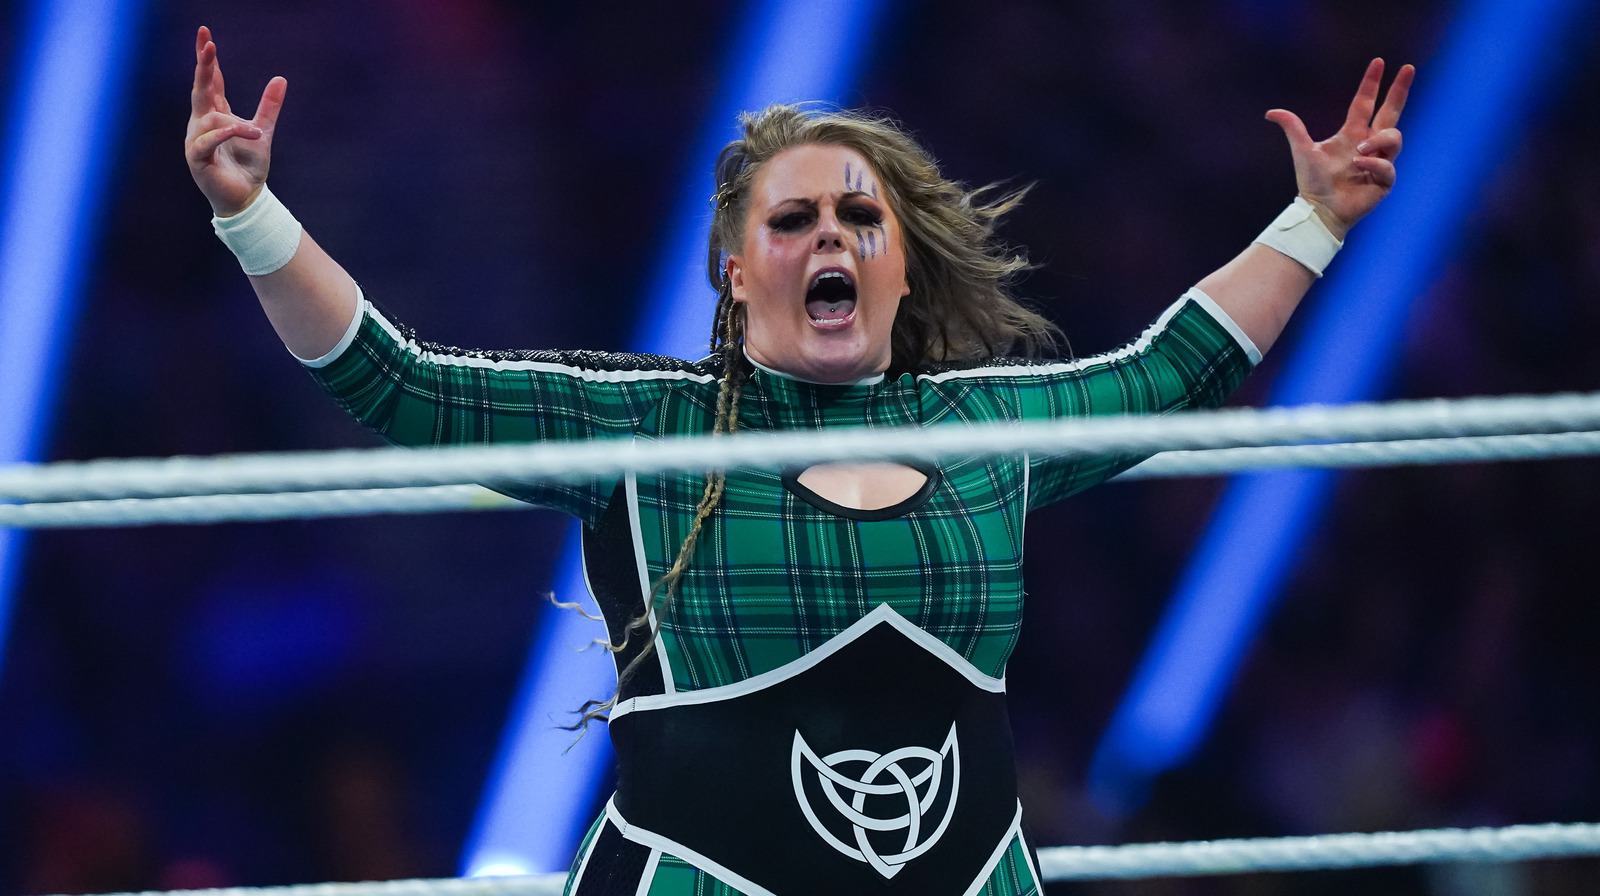 La estrella de la división femenina de la WWE estaría fuera por lesión